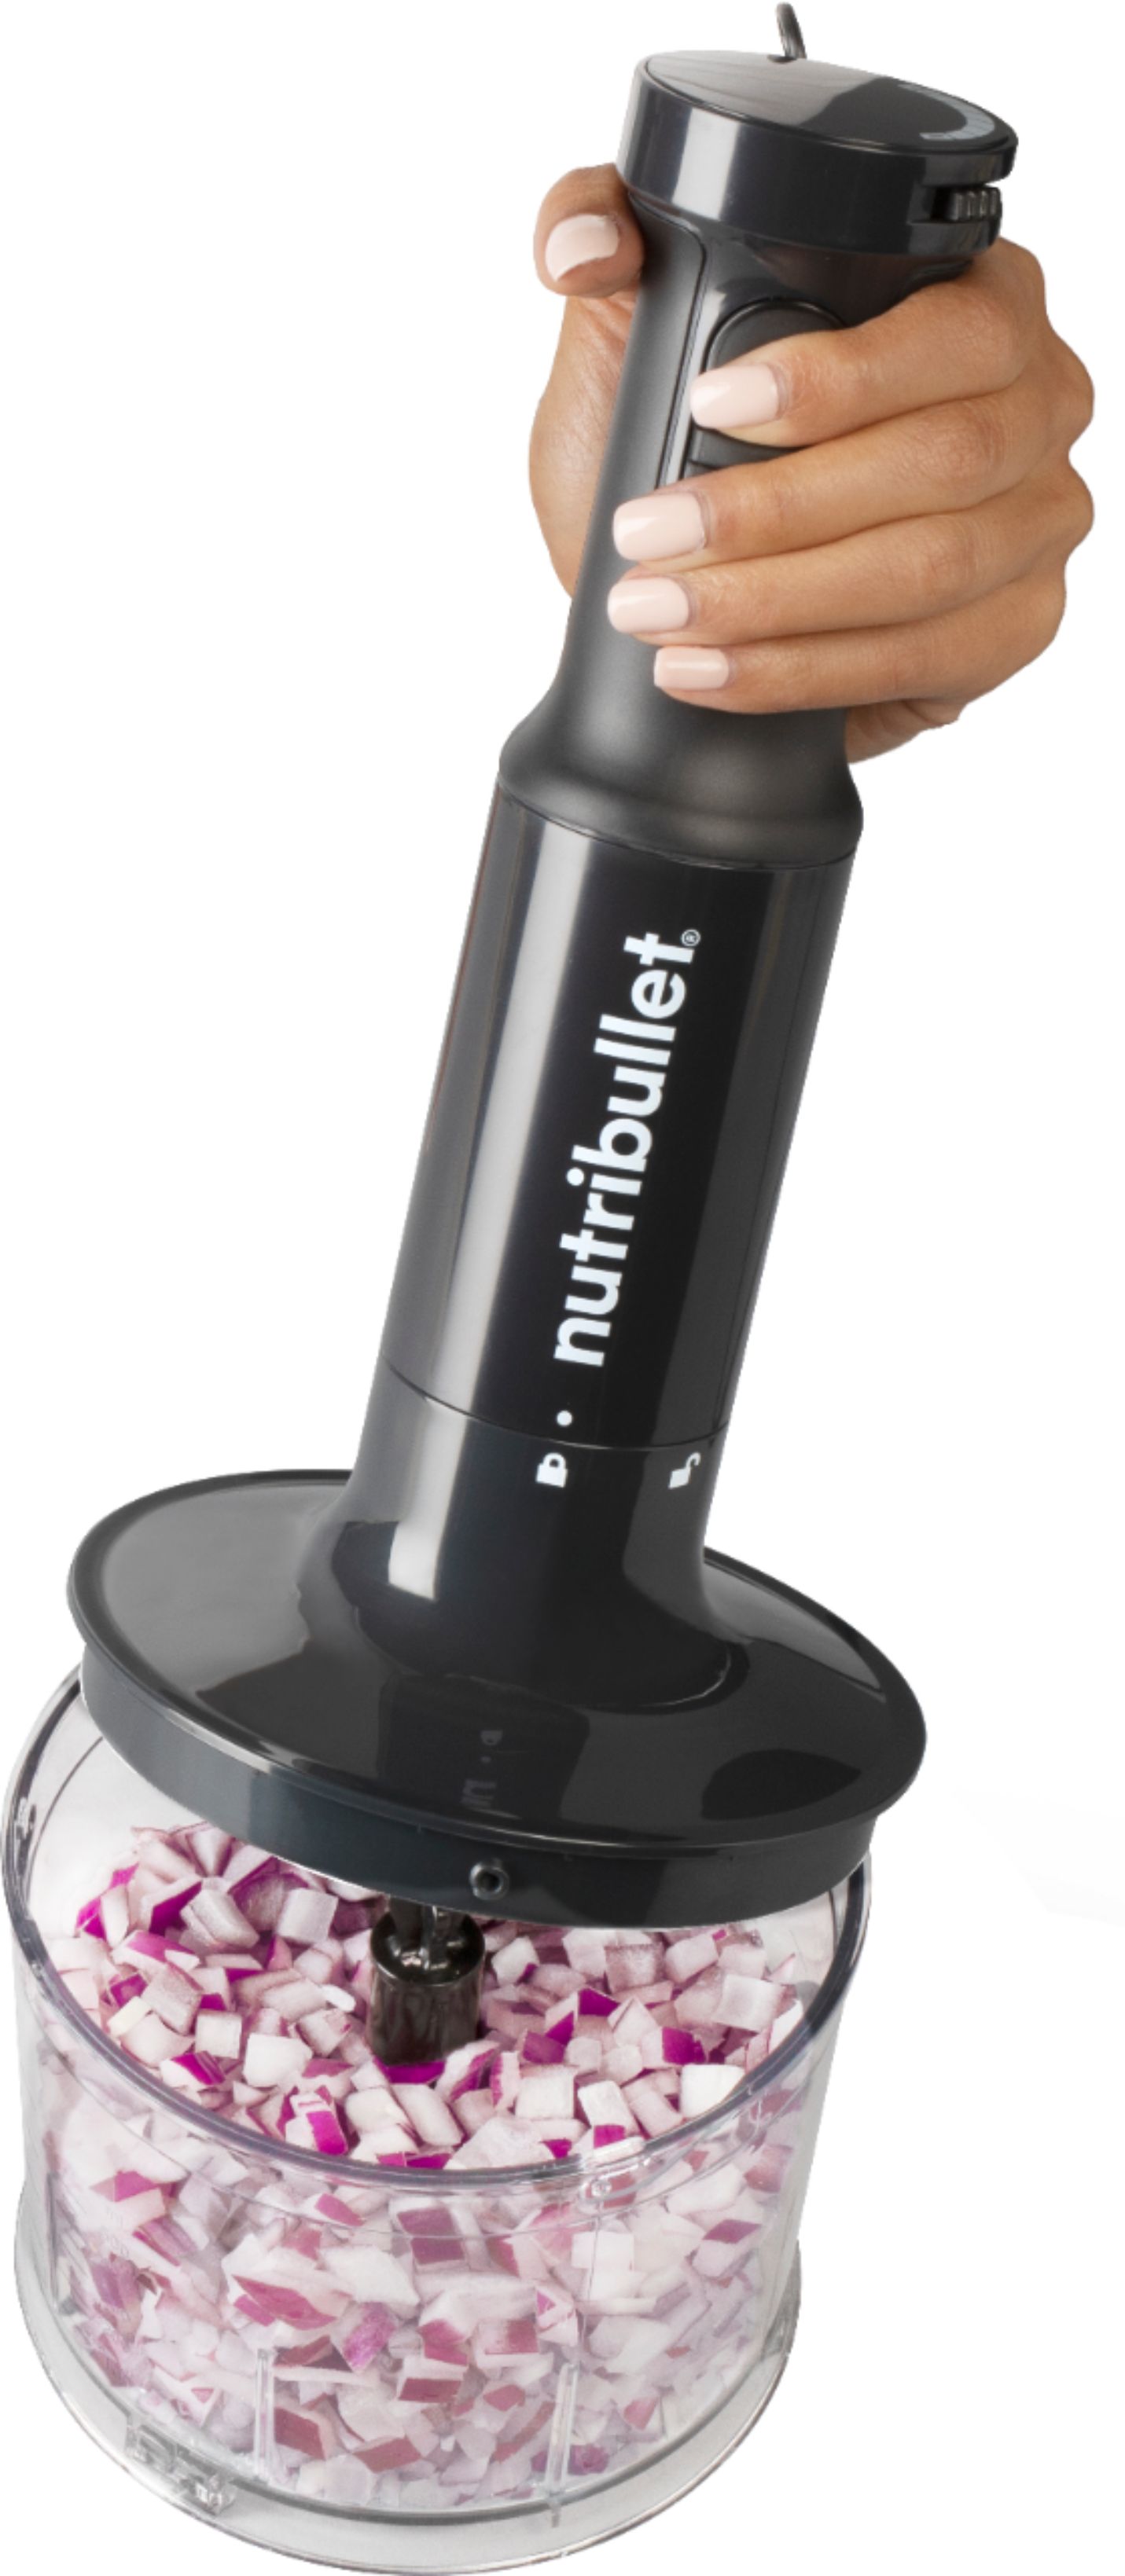 Nutribullet NBI50100 Immersion Blender Review